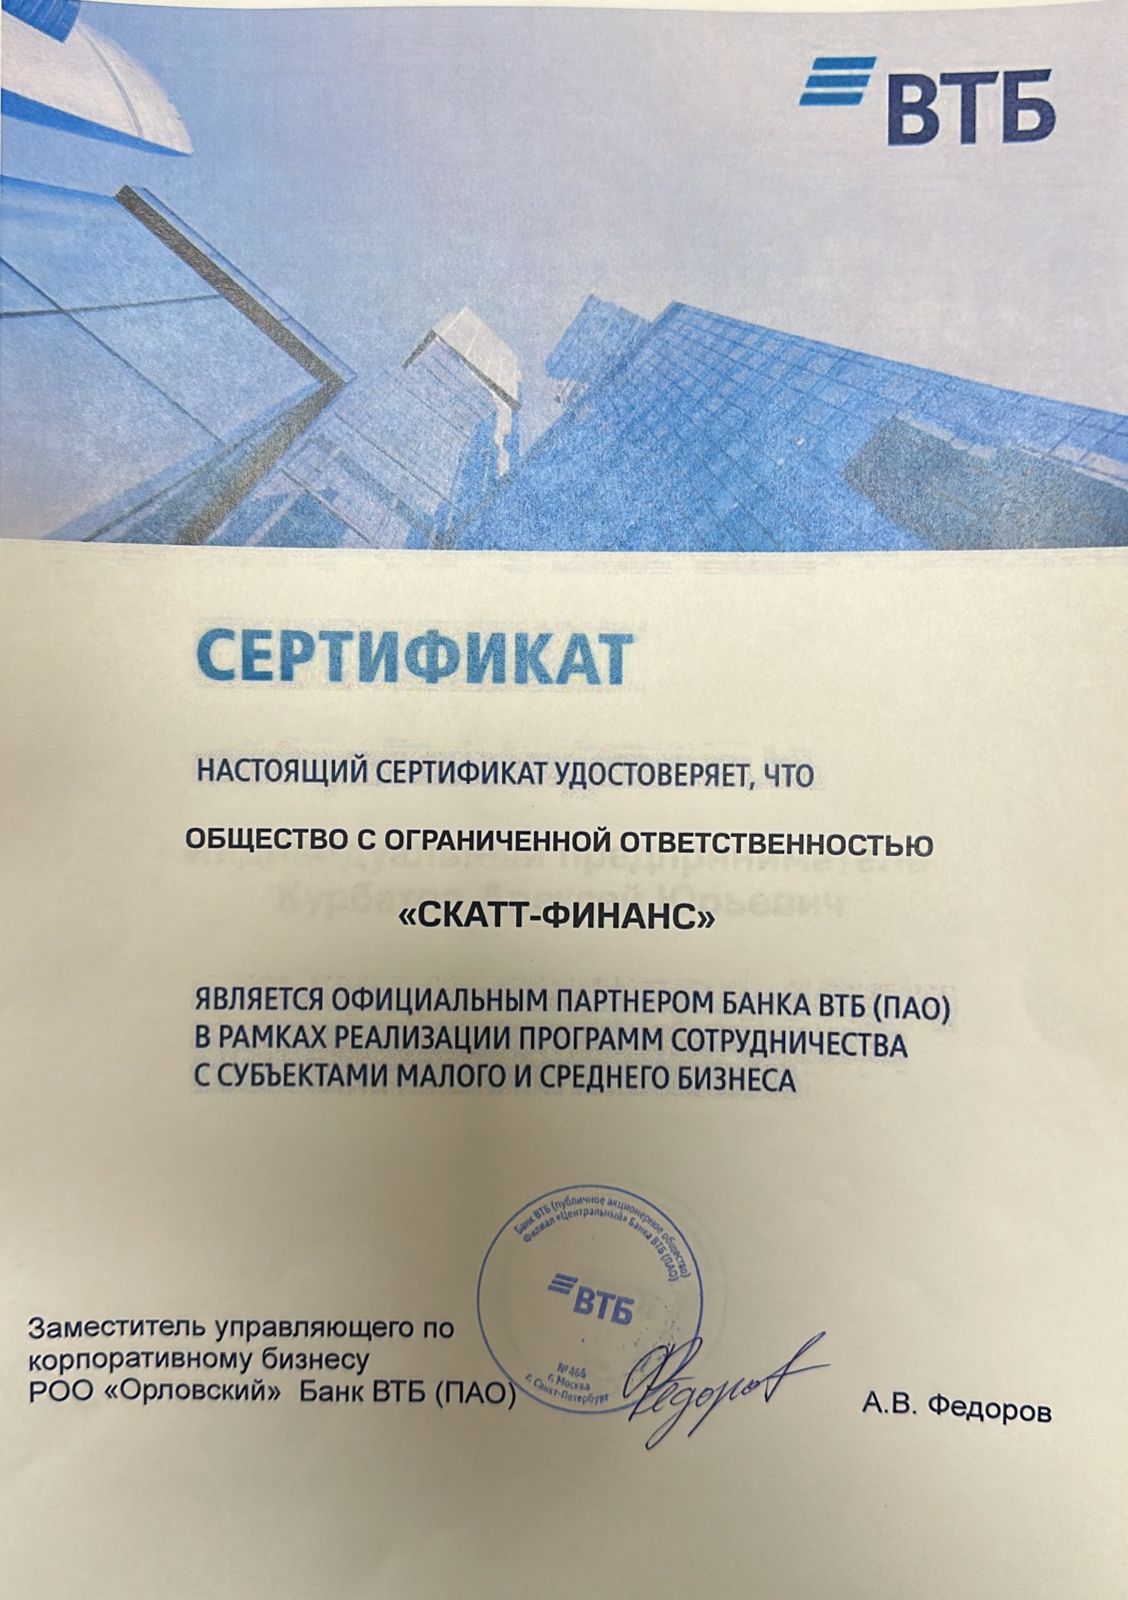 Сертификат Скатт-финанс от ВТБ